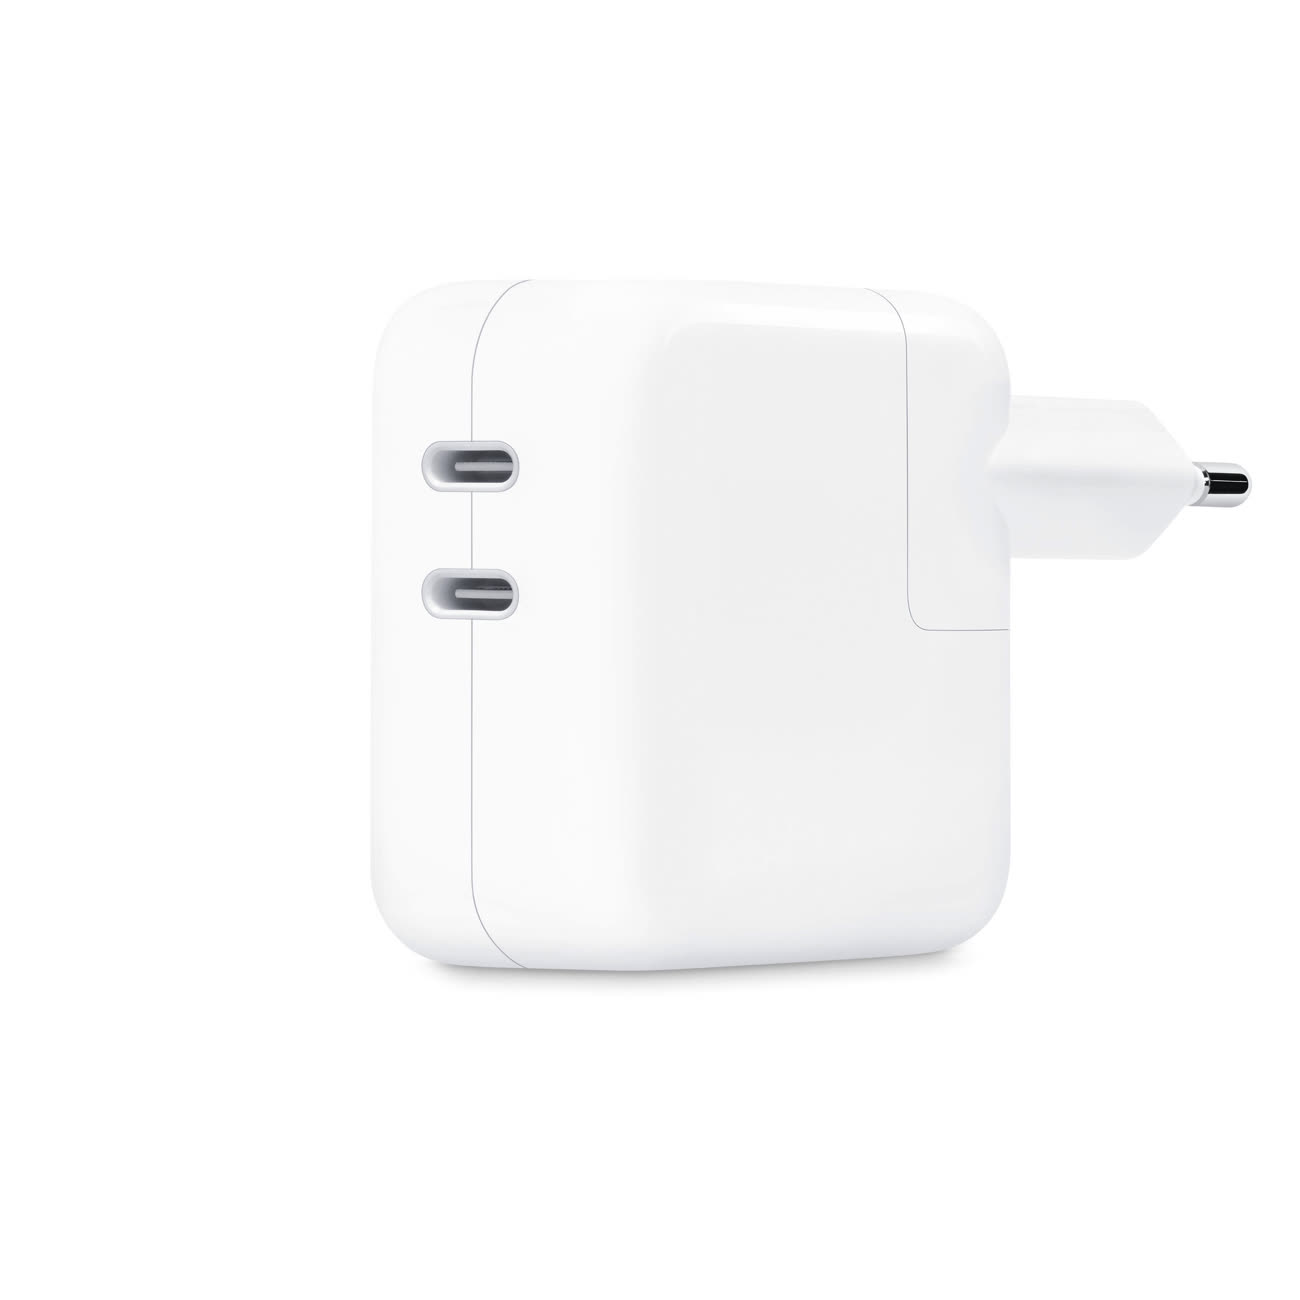 L'adaptateur double port USB-C d'Apple recharge deux appareils à